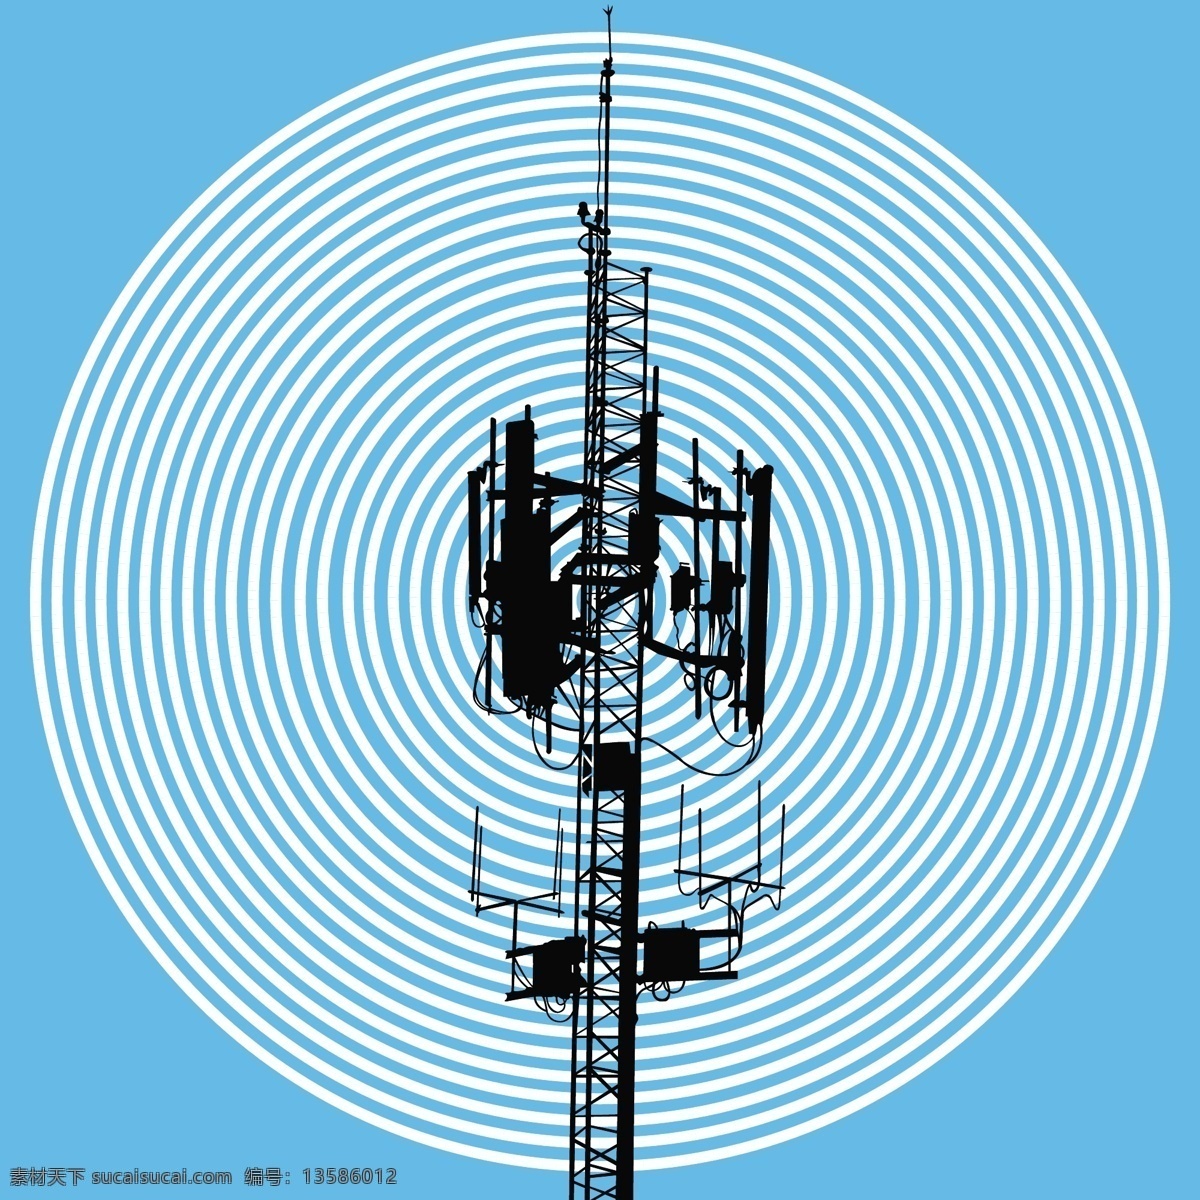 蓝色 圆形 信号 塔 图标 矢量 设计素材 矢量素材 背景素材 信号塔 平面设计